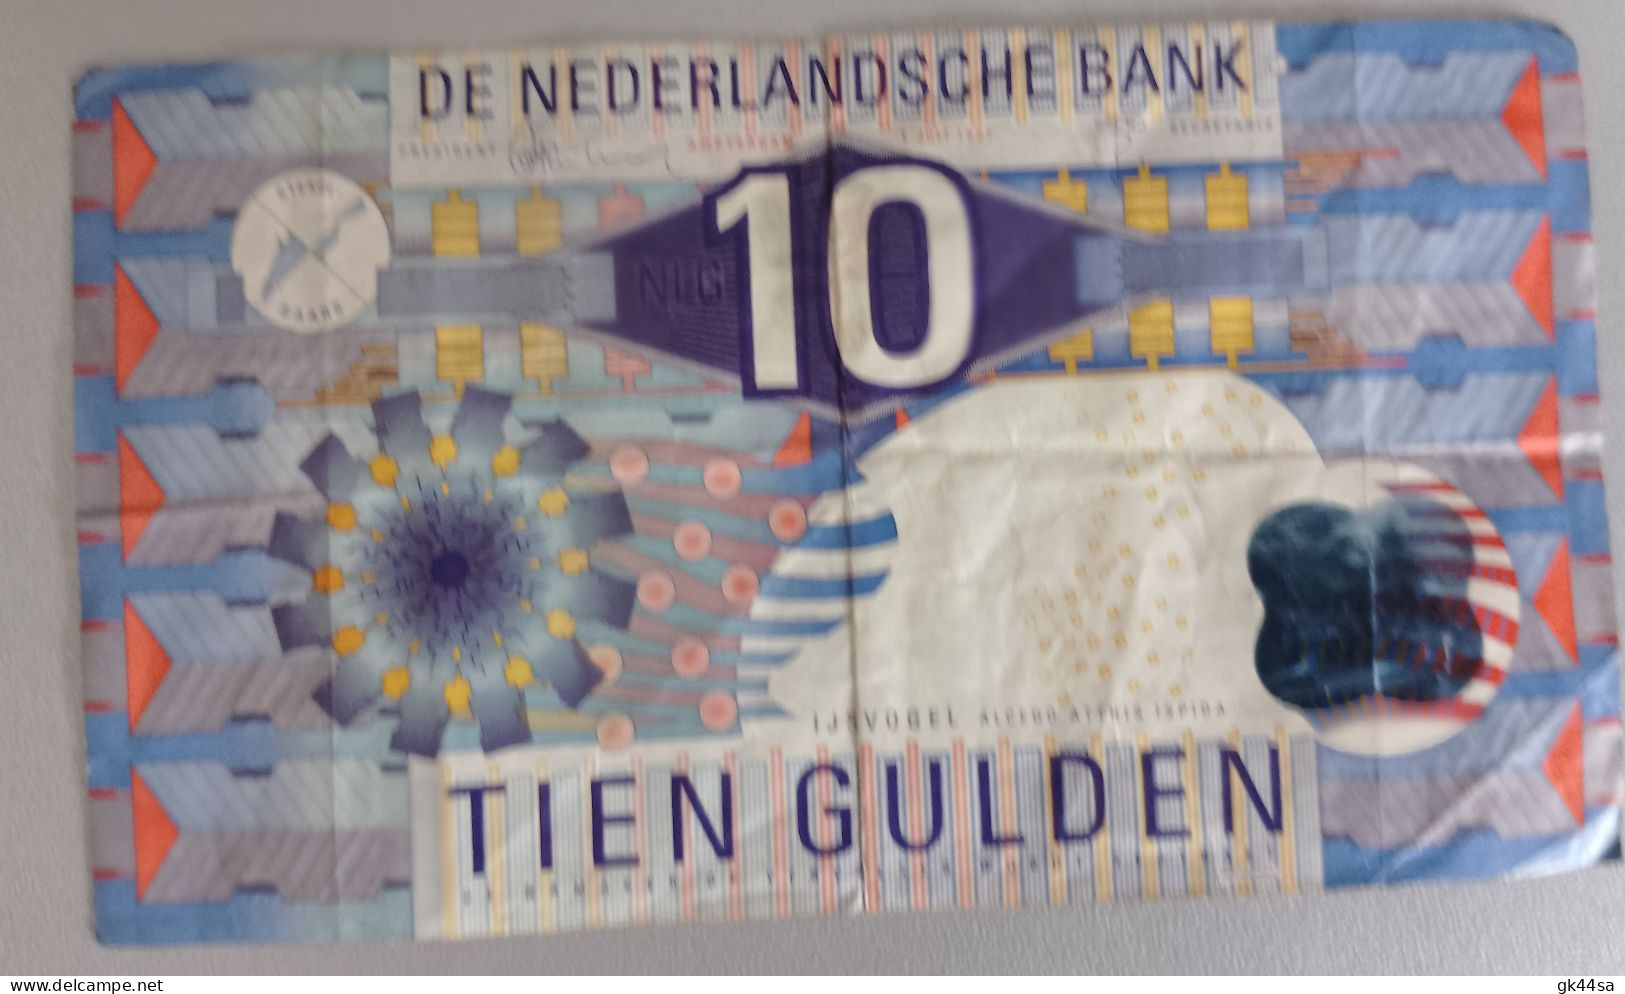 10 TIEN GULDEN - DE NEDERLANDSCHE BANK - AMSTERDAM 1997 - To Identify